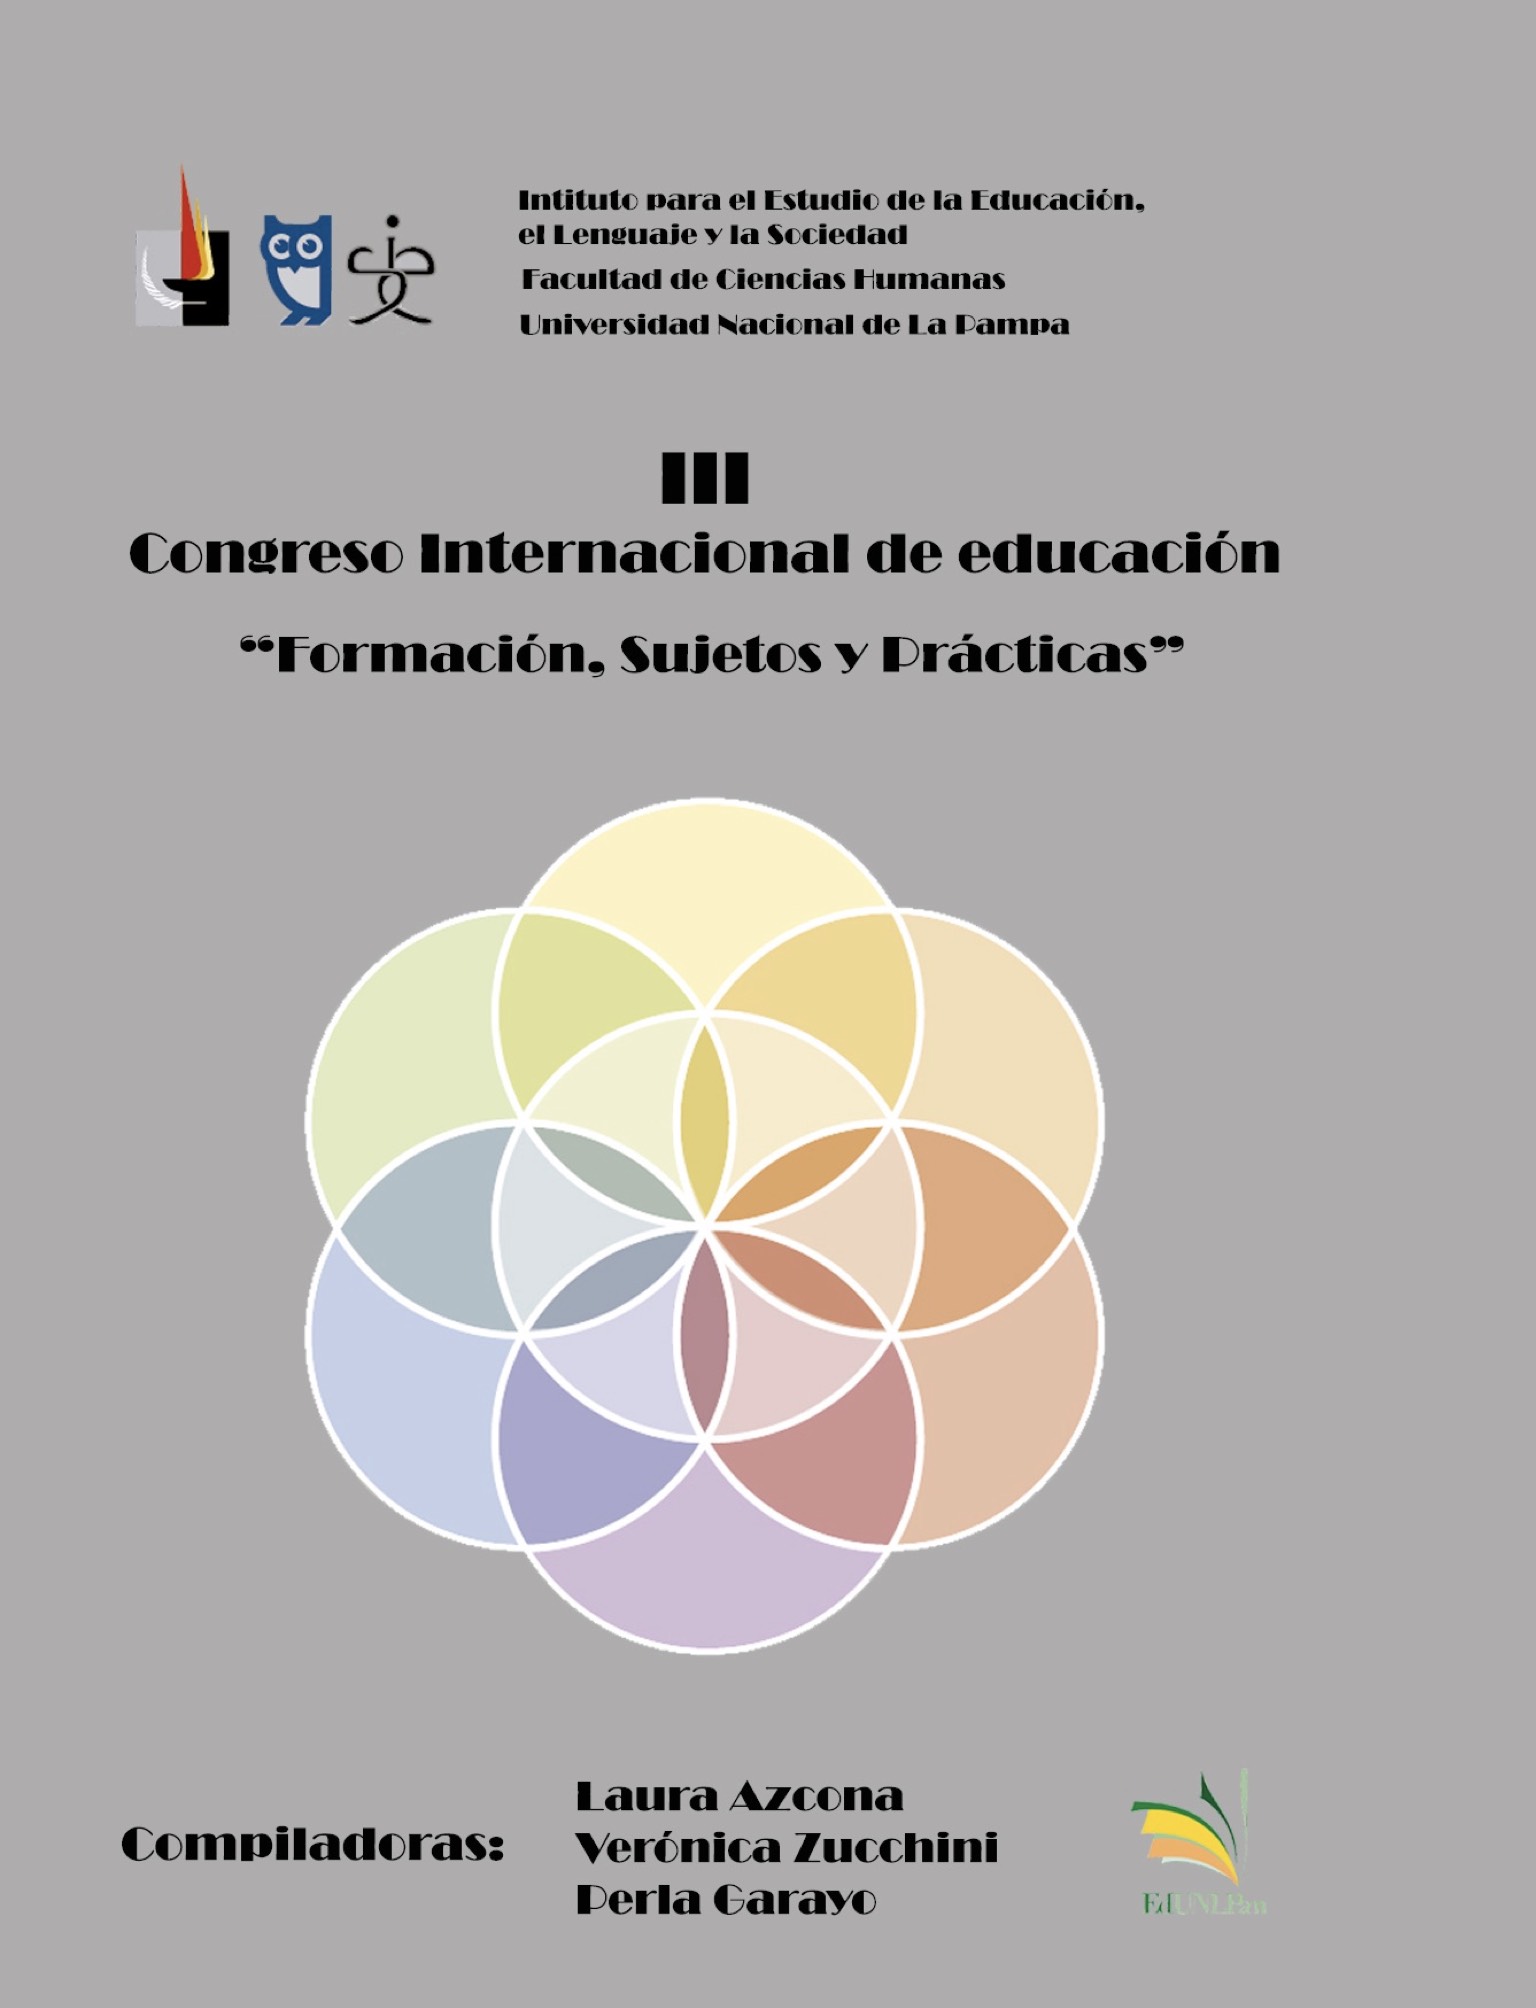 Actas III Congreso Internacional de Educación: Formación, Sujetos y Prácticas